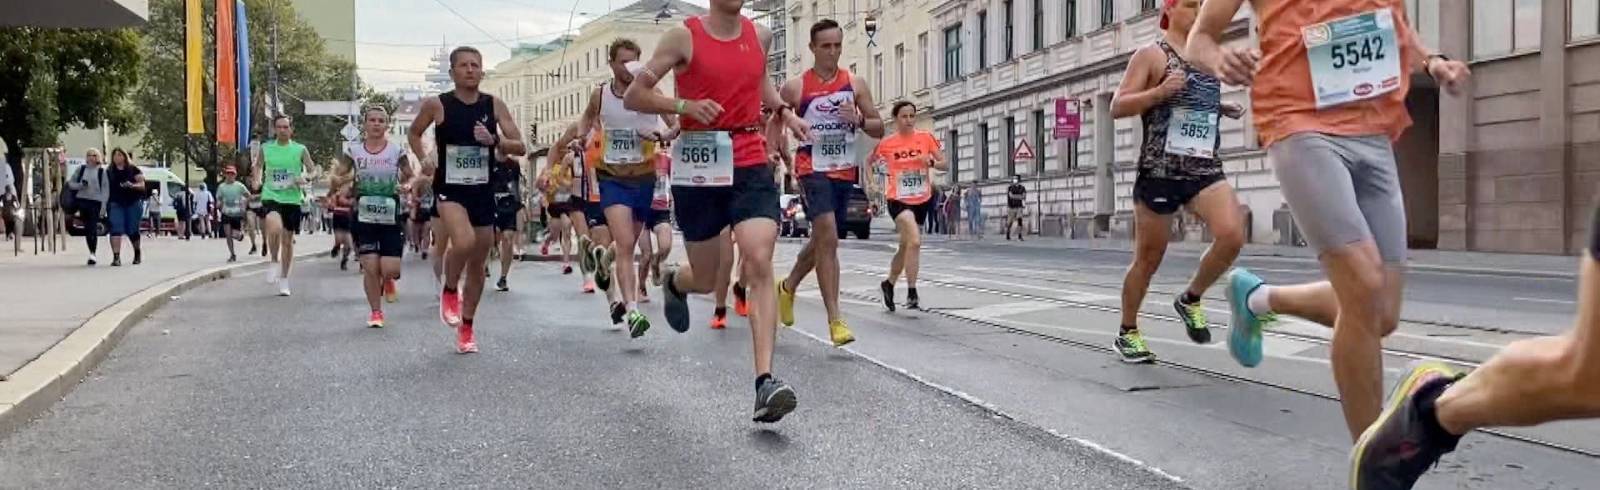 Bezirksflash: Vienna City Marathon